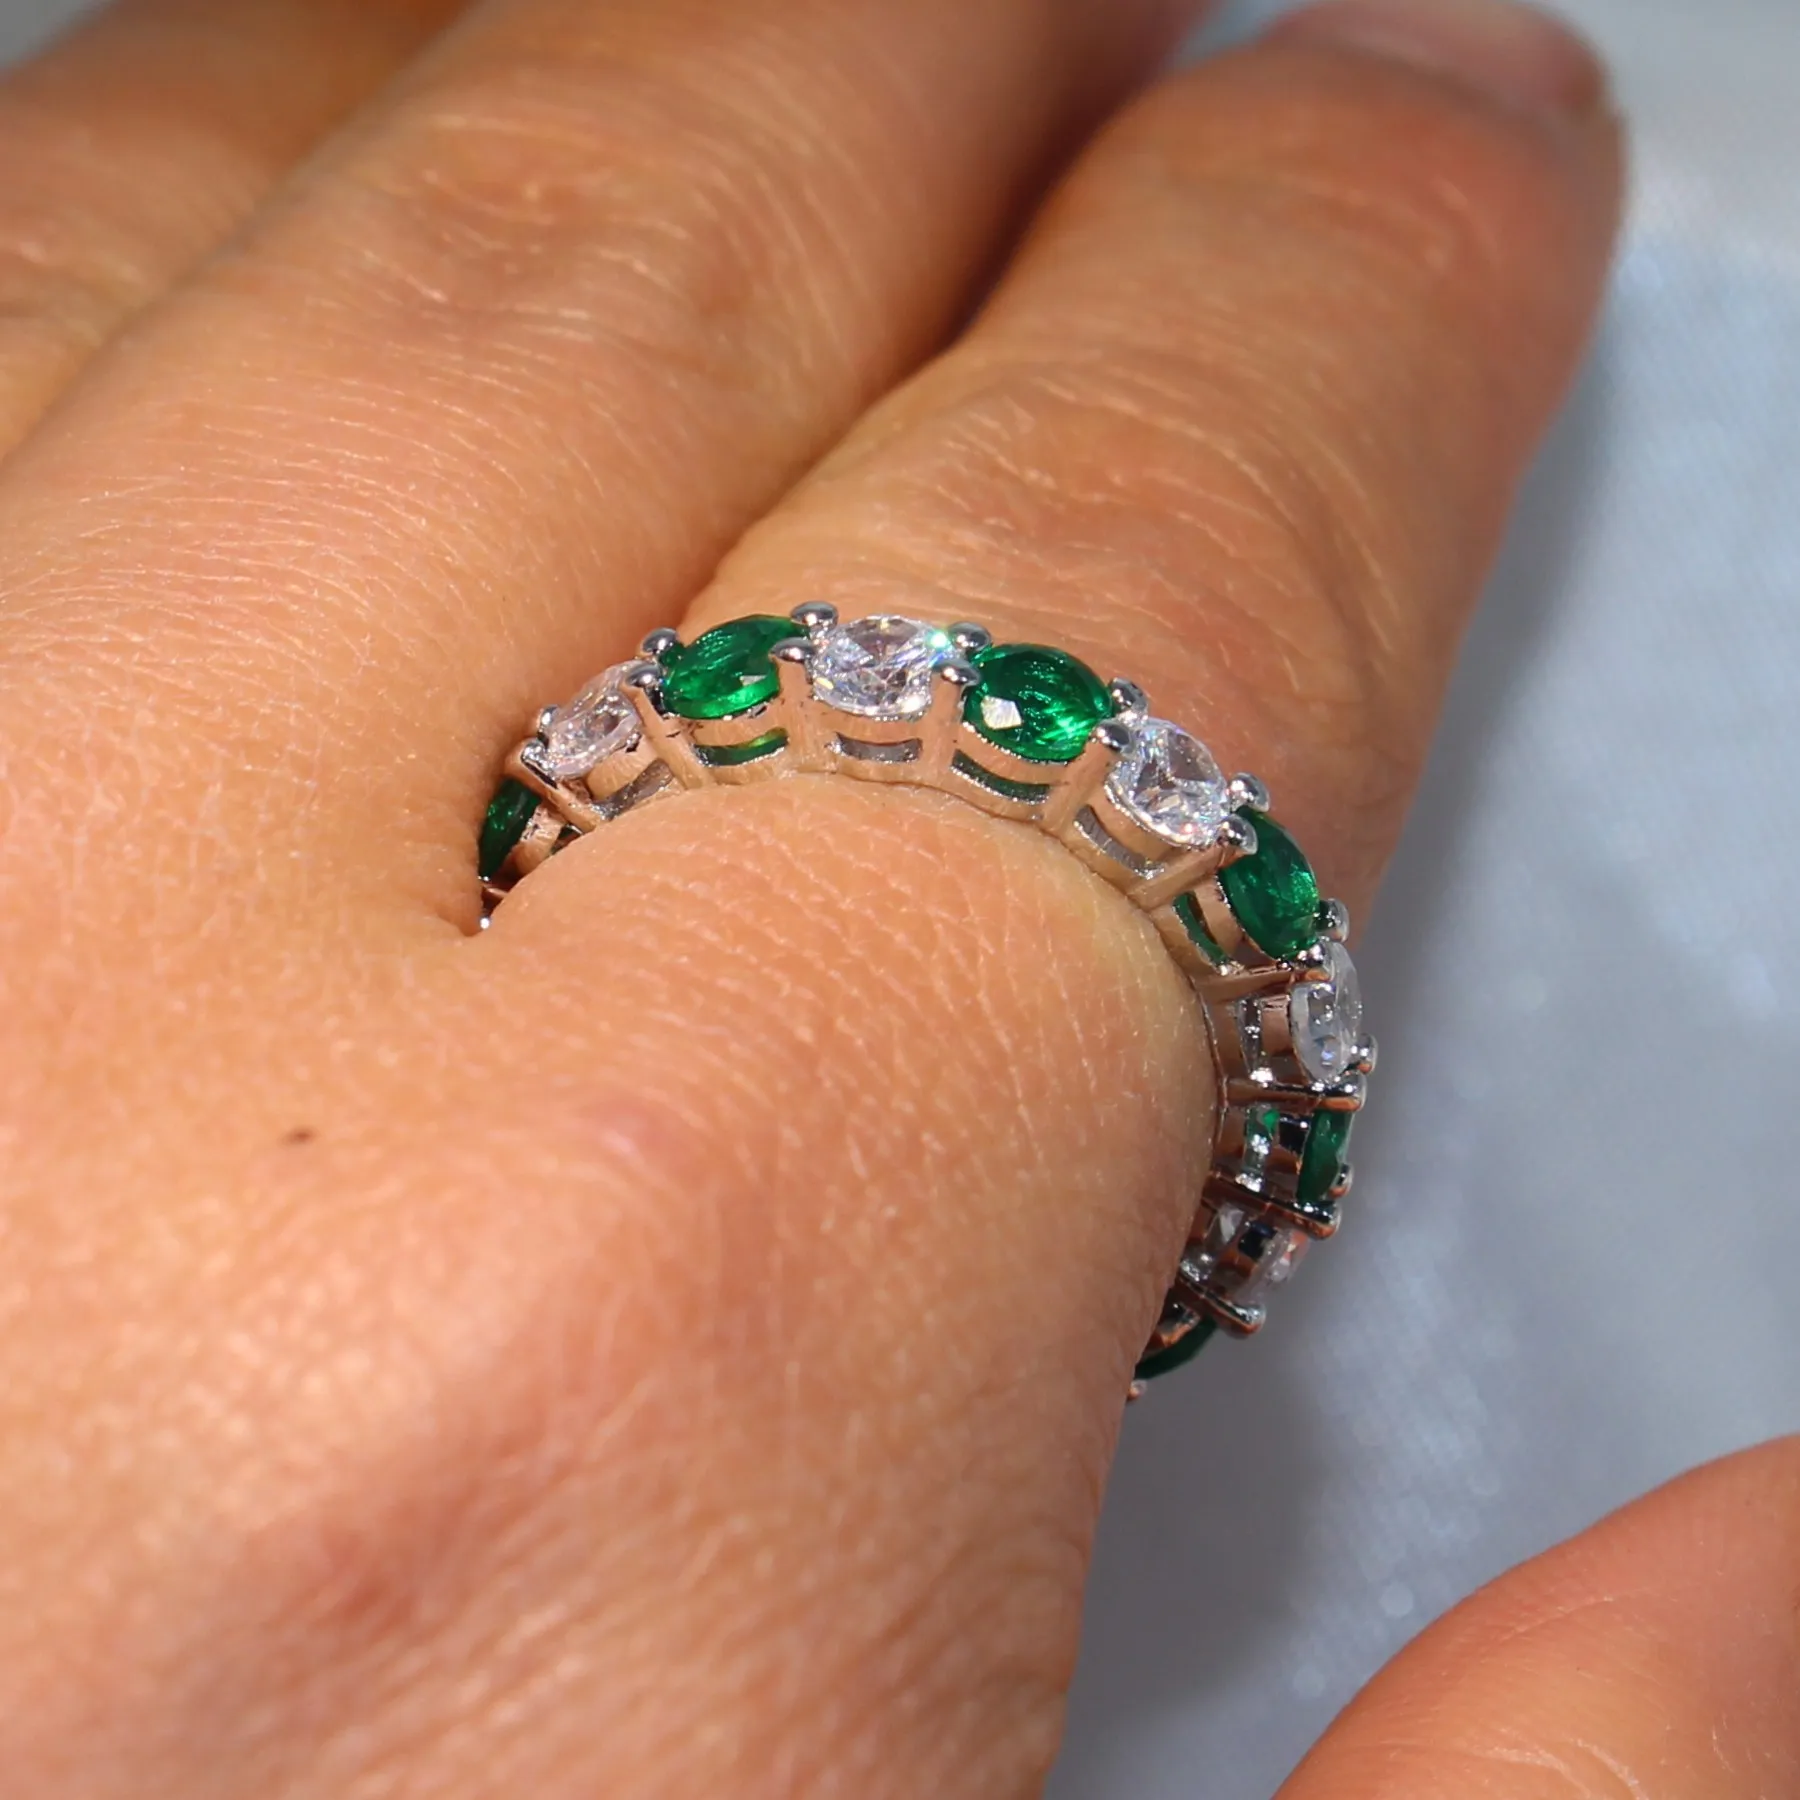 2018 Hot mousserande helt nya lyxsmycken 925 Sterling Silver Round Cut Emerald Zirconia Populära Kvinnor Bröllop Band Cirkel Ring Present CZ